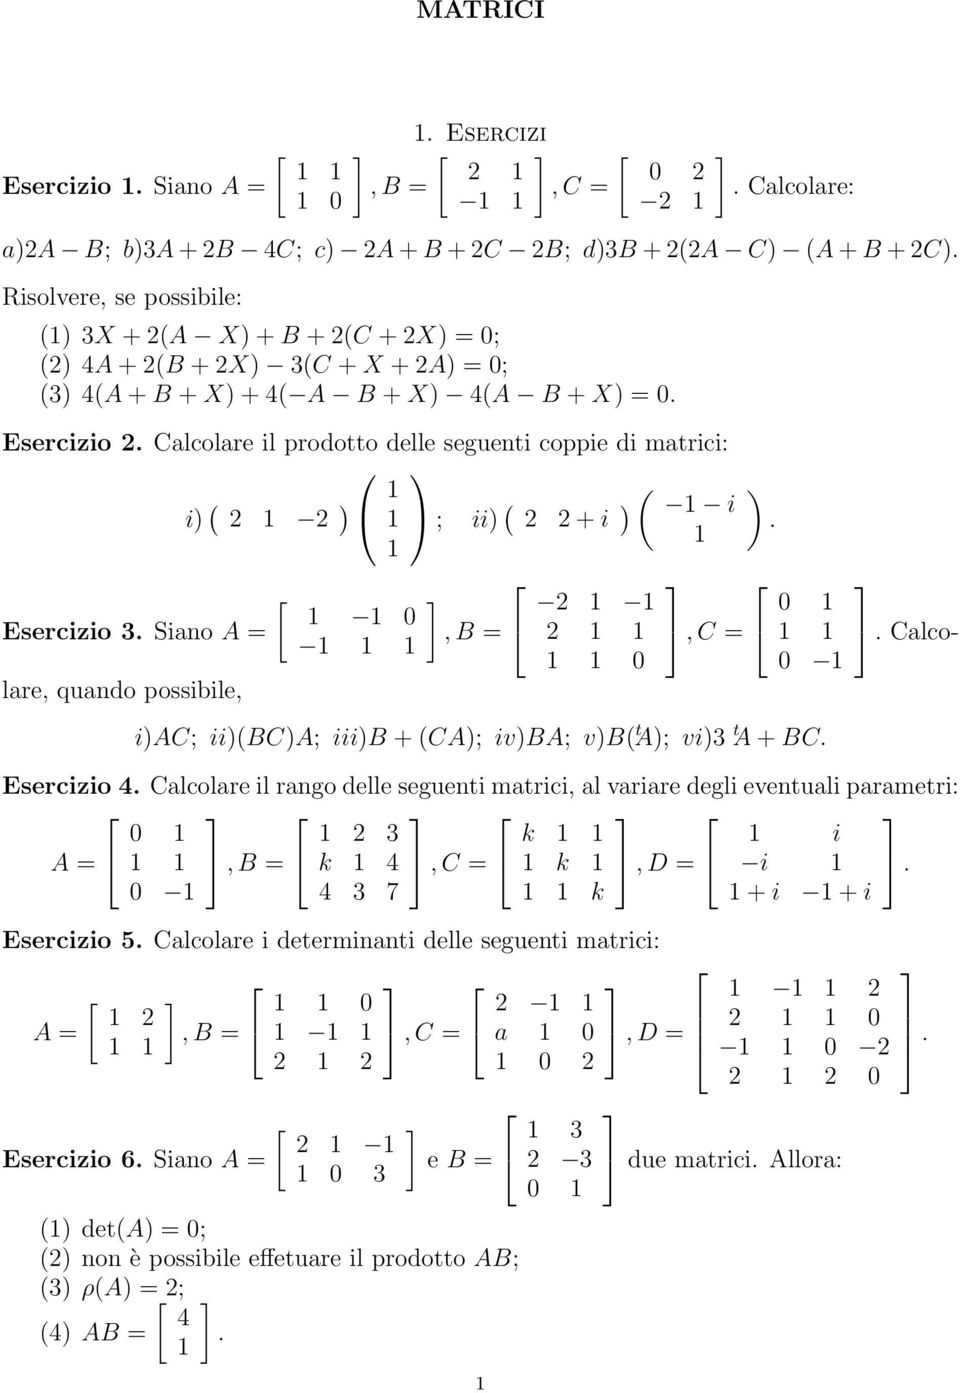 possibile, 0, B = 2 2 0, C = 0 0 iac; ii(bca; iiib + (CA; ivba; vb( t A; vi3 t A + BC Esercizio 4 Calcolare il rango delle seguenti matrici, al variare degli eventuali parametri: A = 0, B = 2 3 k 4,